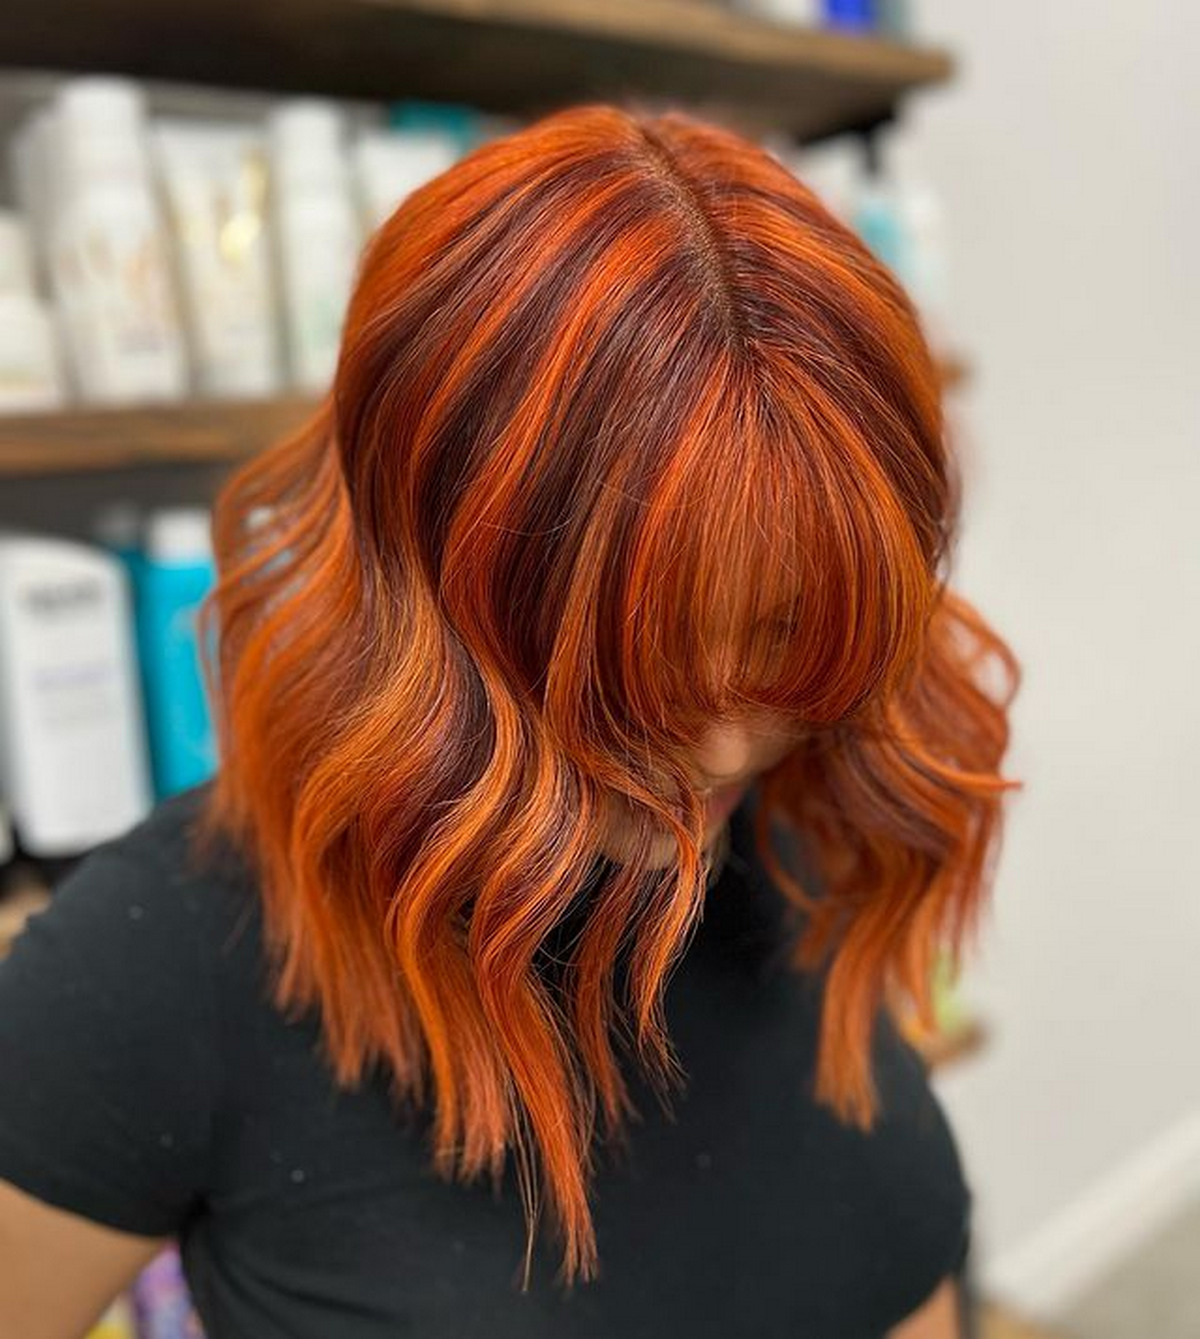 Chunky Highlights Orange Waves Short Hair